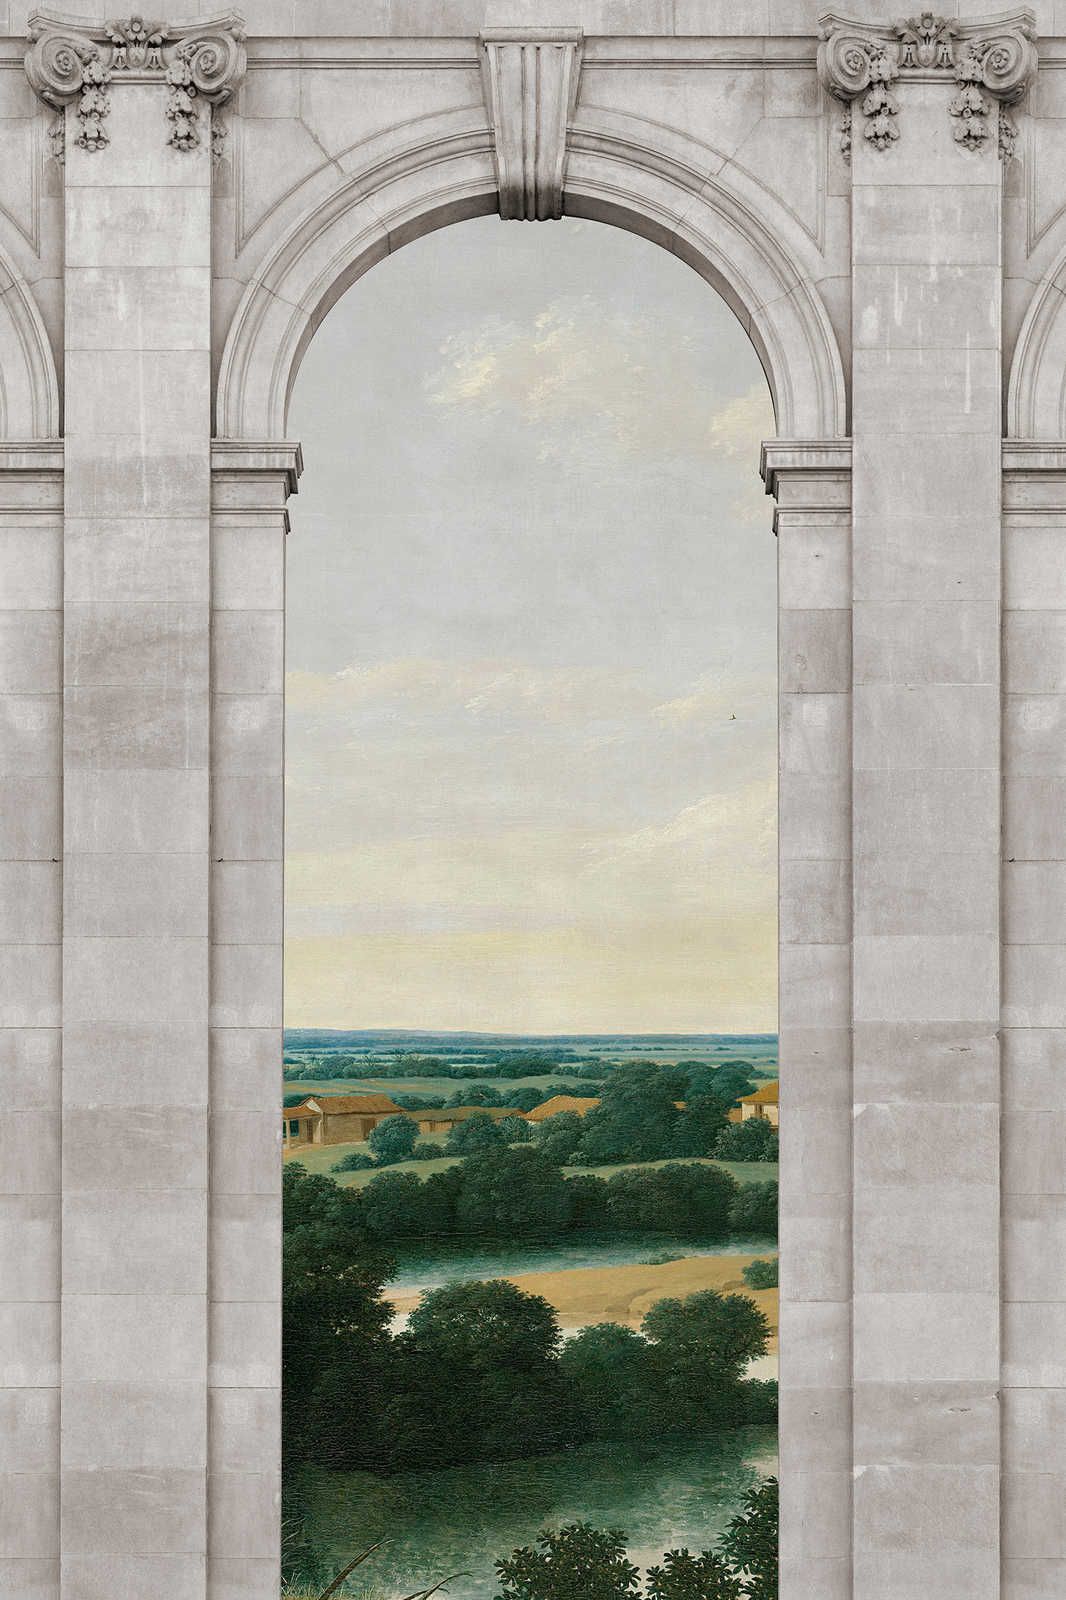             Castello 2 - Window Canvas Painting Arch & View Landscape - 0.90 m x 0.60 m
        